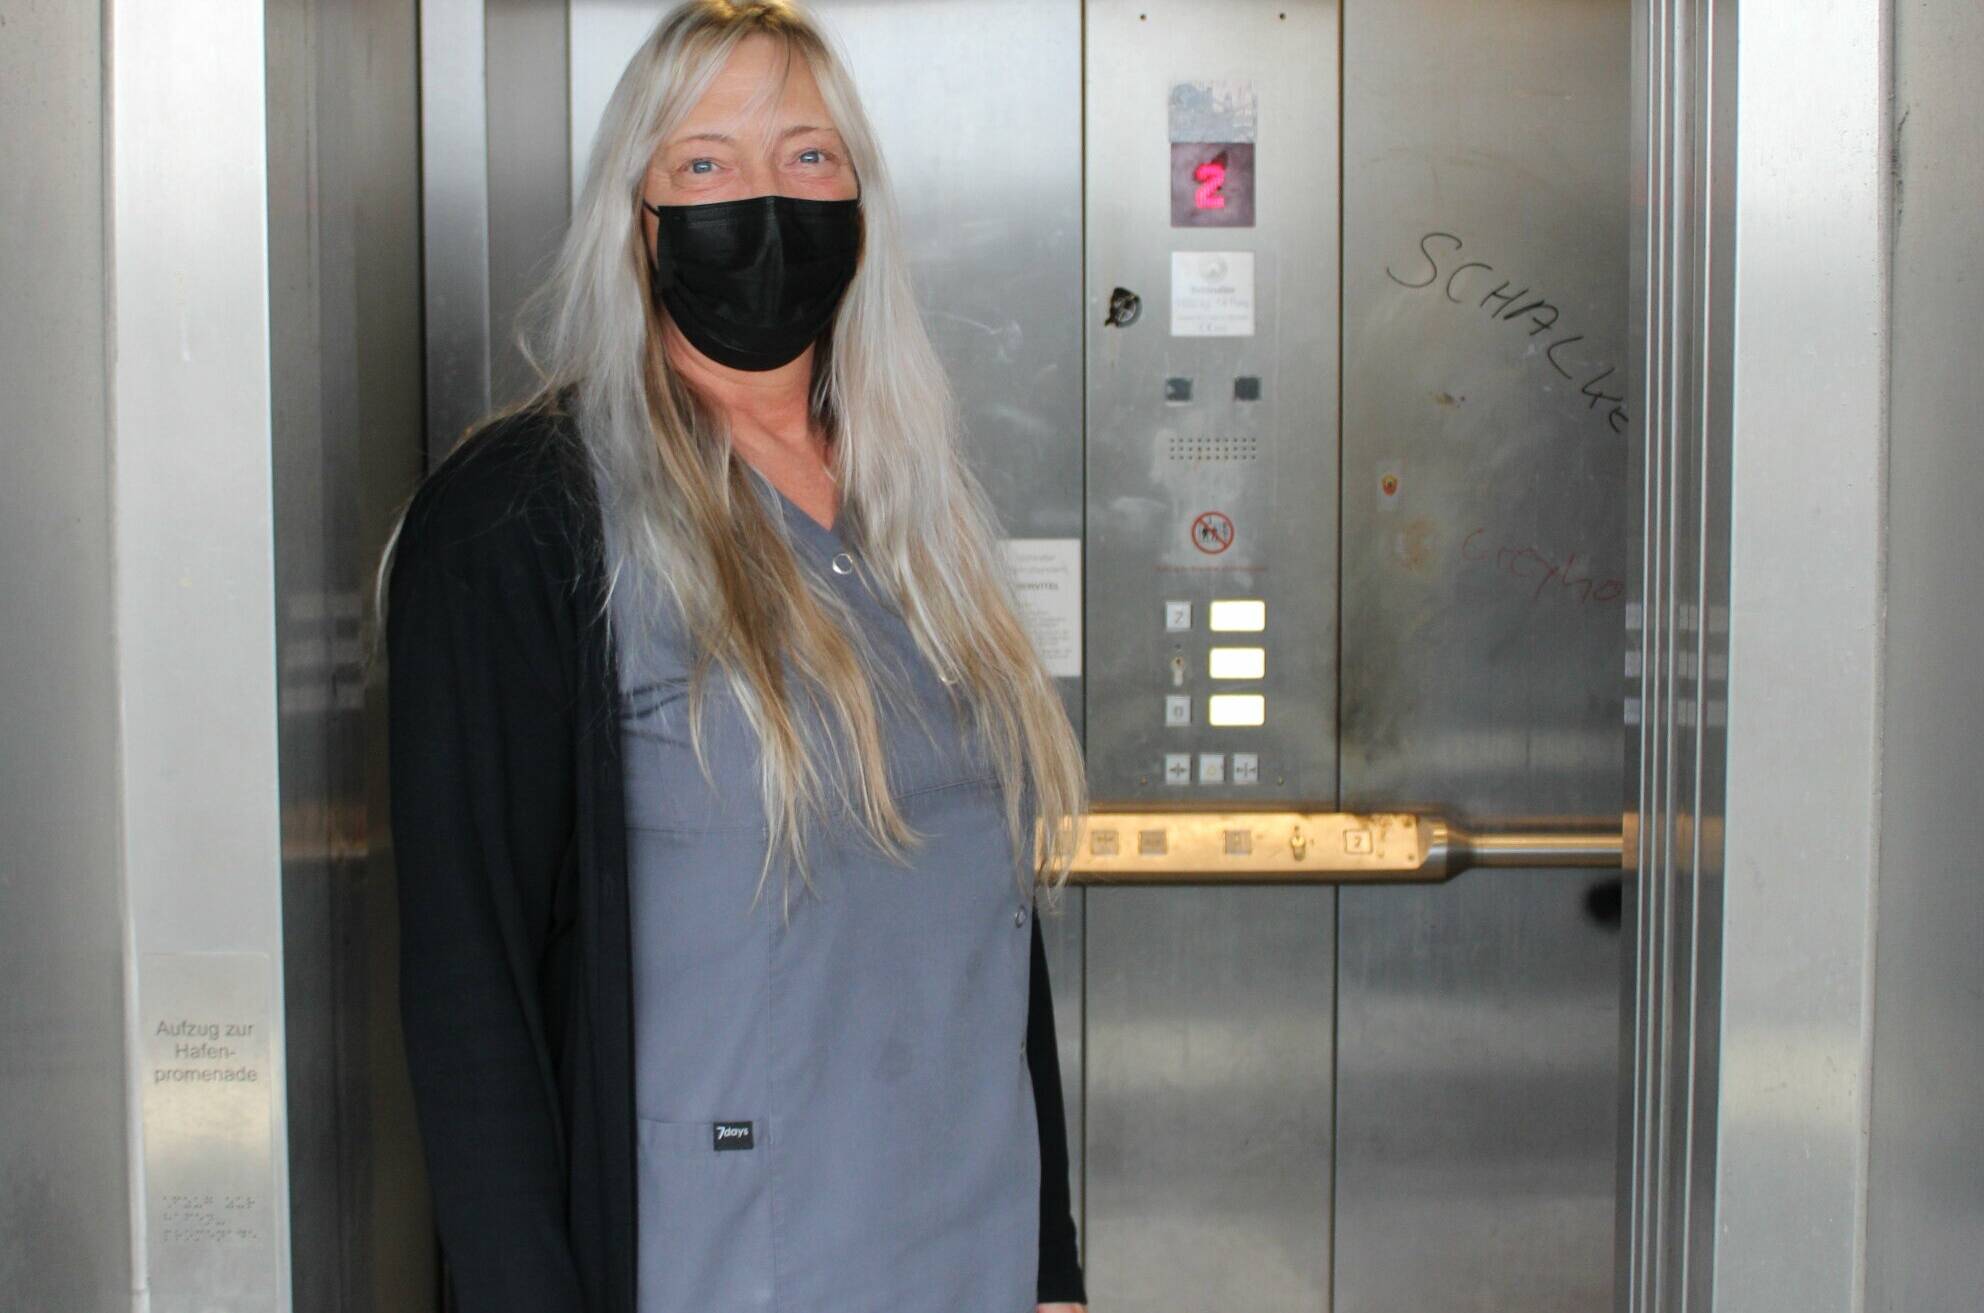   Da ist eine Maske wirklich empfehlenswert: Edith Neunkirchen vor dem stinkenden und verdreckten Aufzug.  